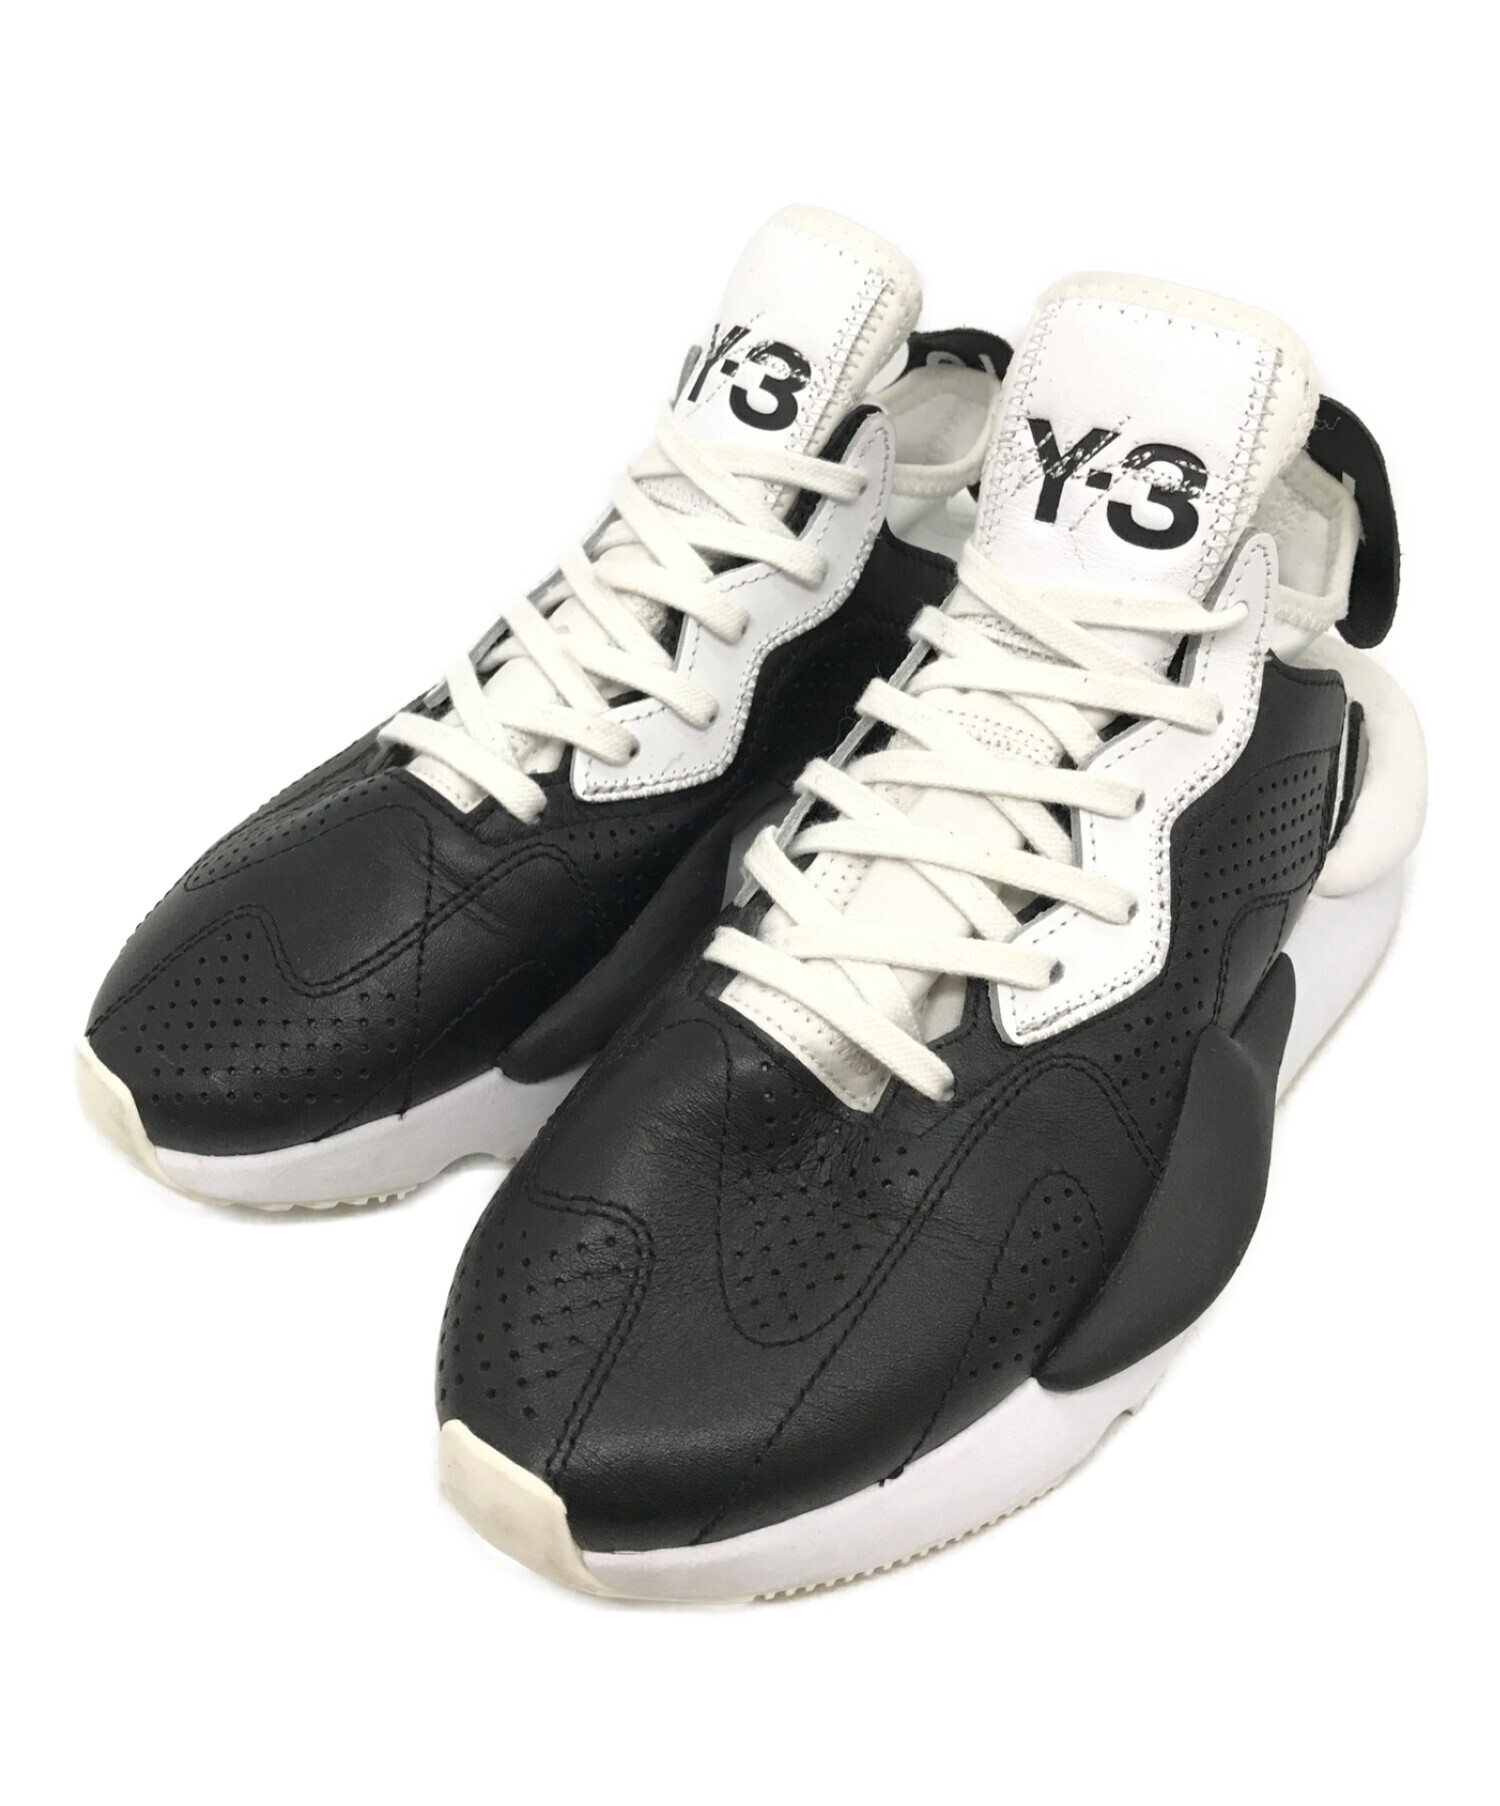 Y-3 ワイスリー kaiwa カイワ スニーカー 靴 24.5cm ブラック